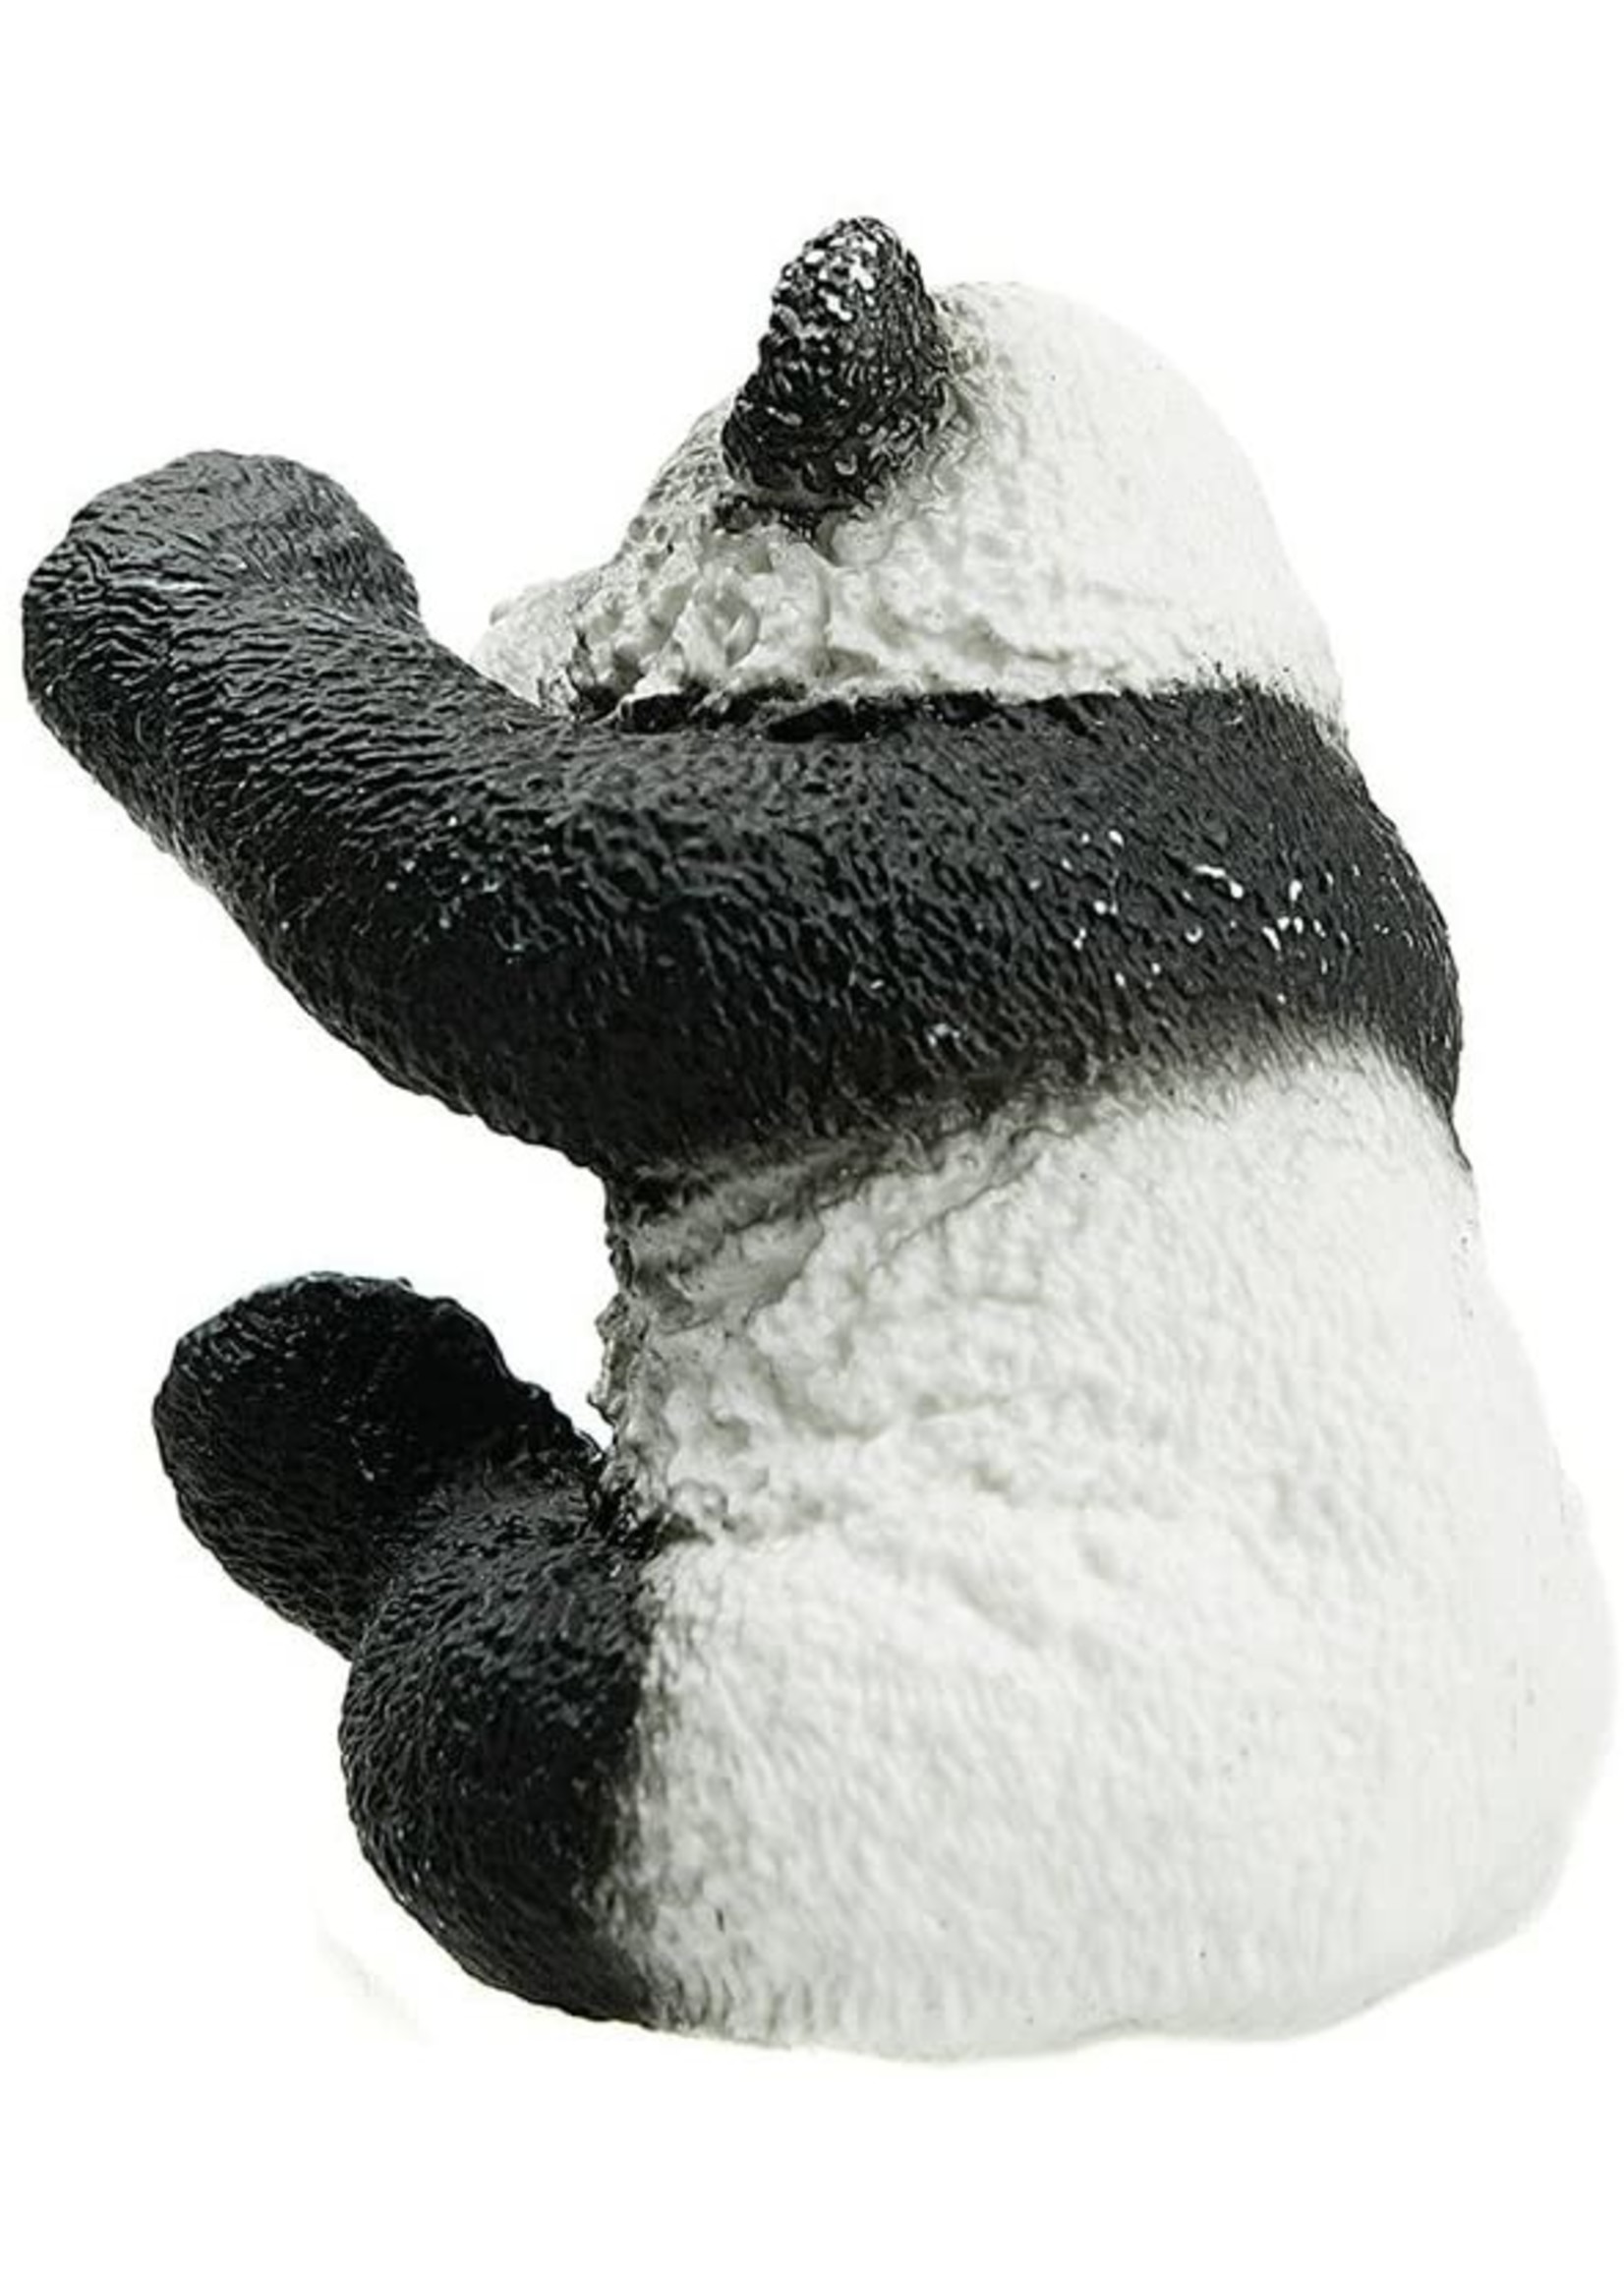 Schleich 14734 - Panda Cub, Playing